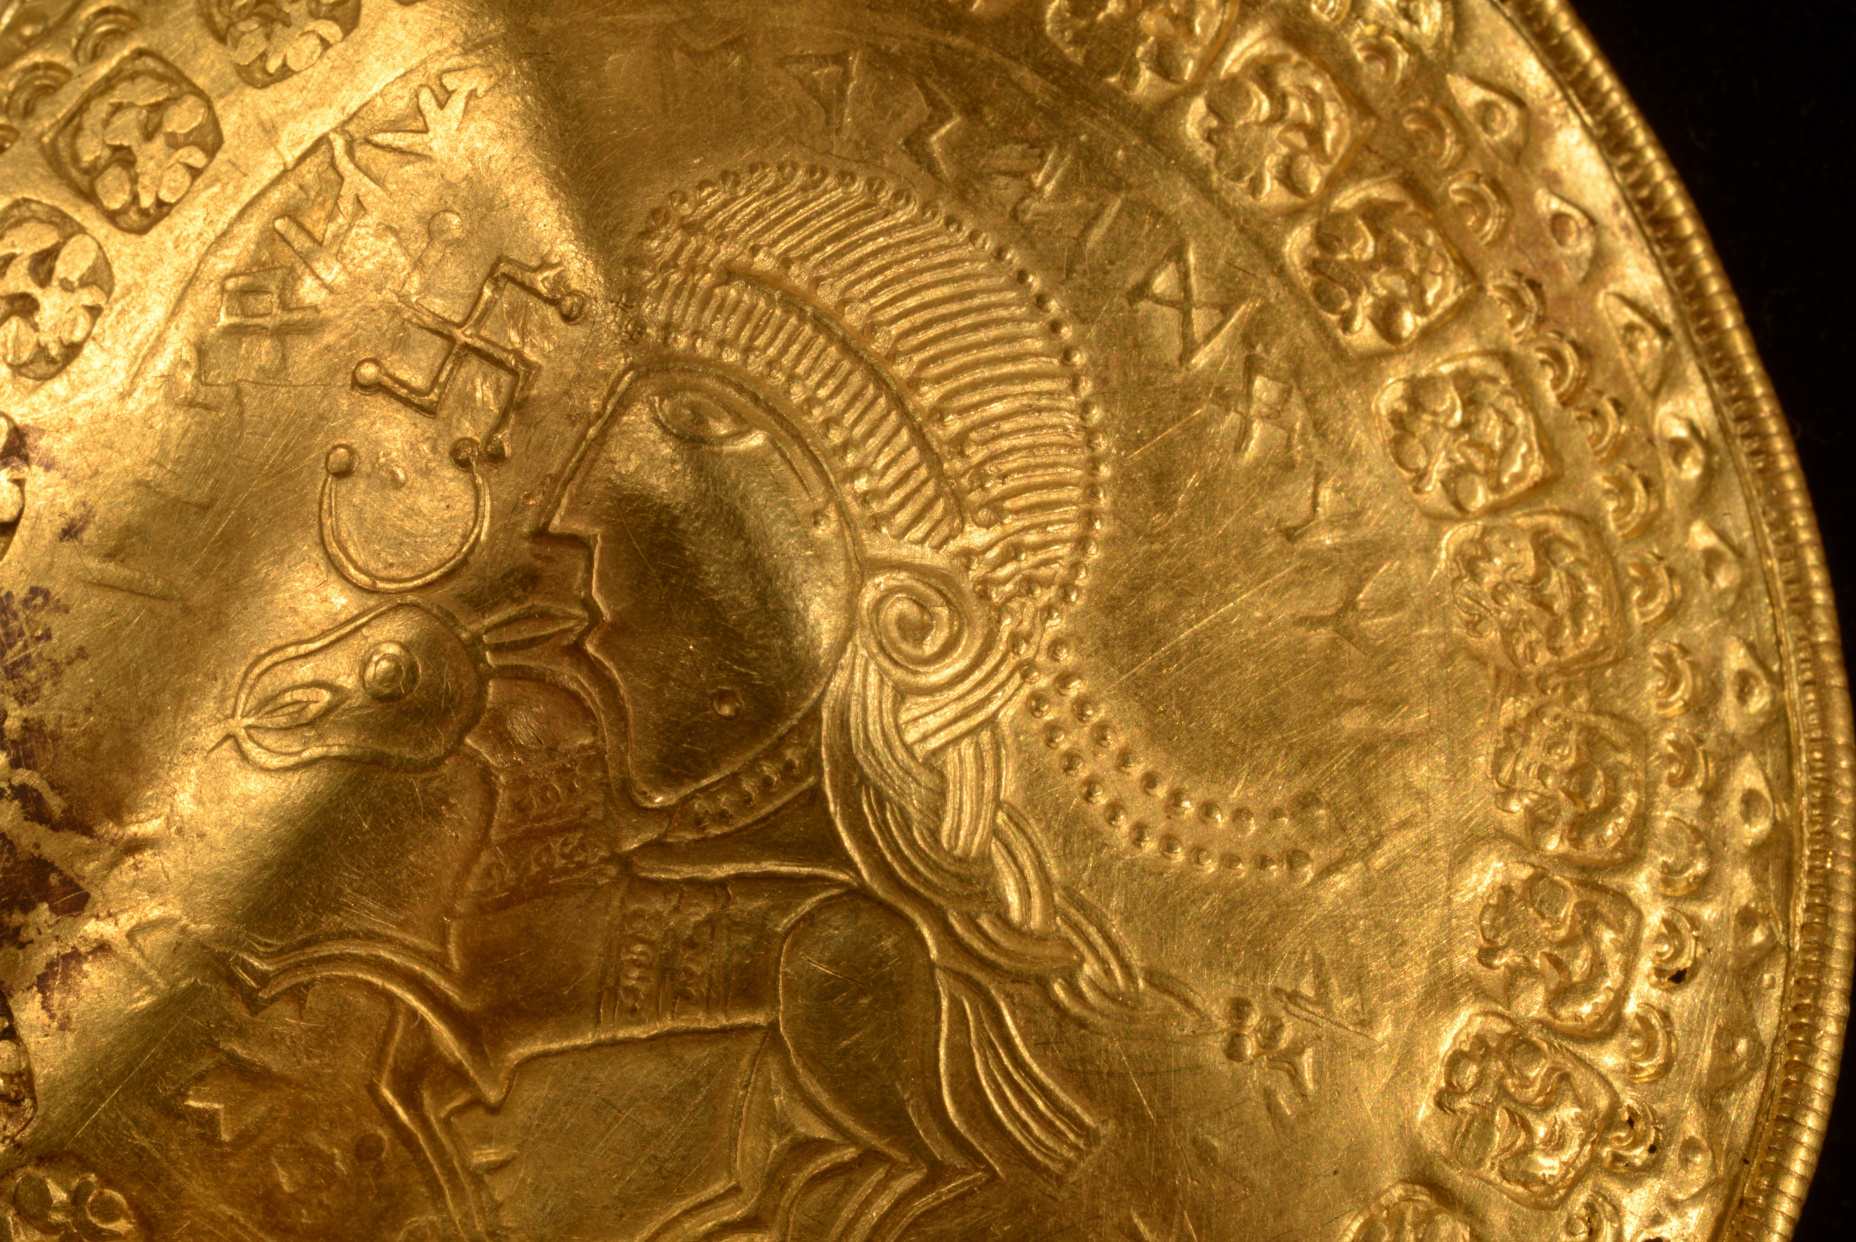 Napis 'On je Odinov mož' je viden v okroglem polkrogu nad glavo figure na zlatem brakteatu, ki so ga konec leta 2020 izkopali v Vindelevu na Danskem. Znanstveniki so prepoznali najstarejšo znano omembo nordijskega boga Odina na zlatu disk, izkopan na zahodu Danske.